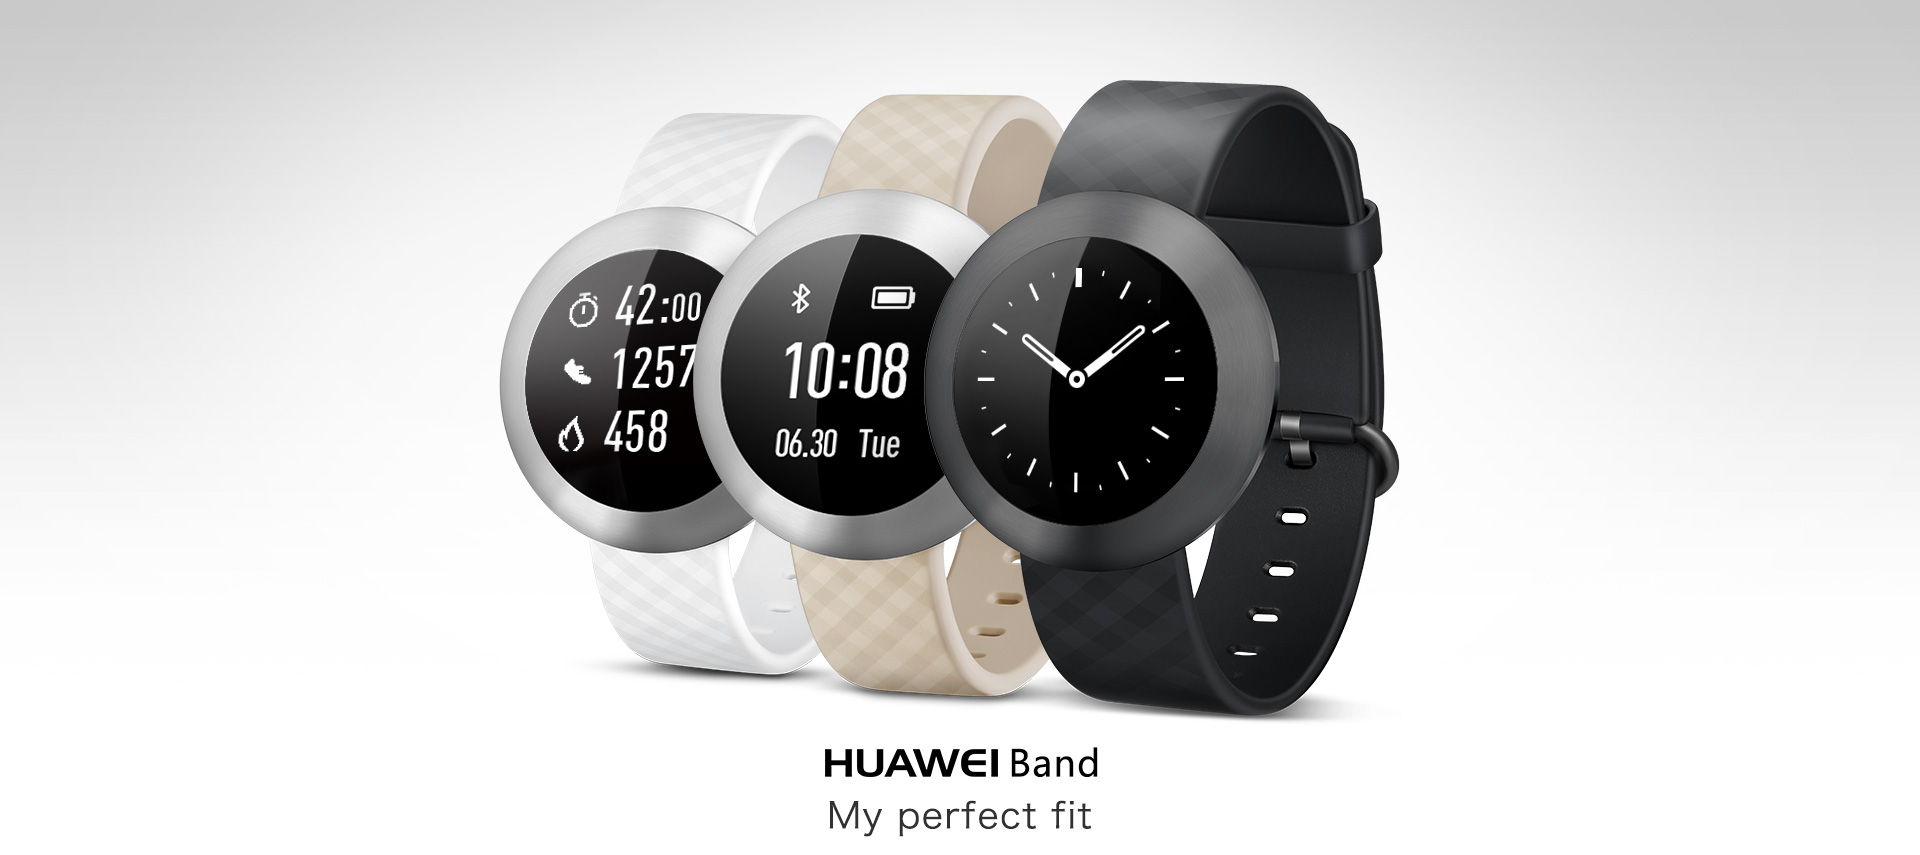 Хуавей бэнд 8. Часы Хуавей бэнд 8. Huawei Band 1. Умные часы Huawei Band 8.